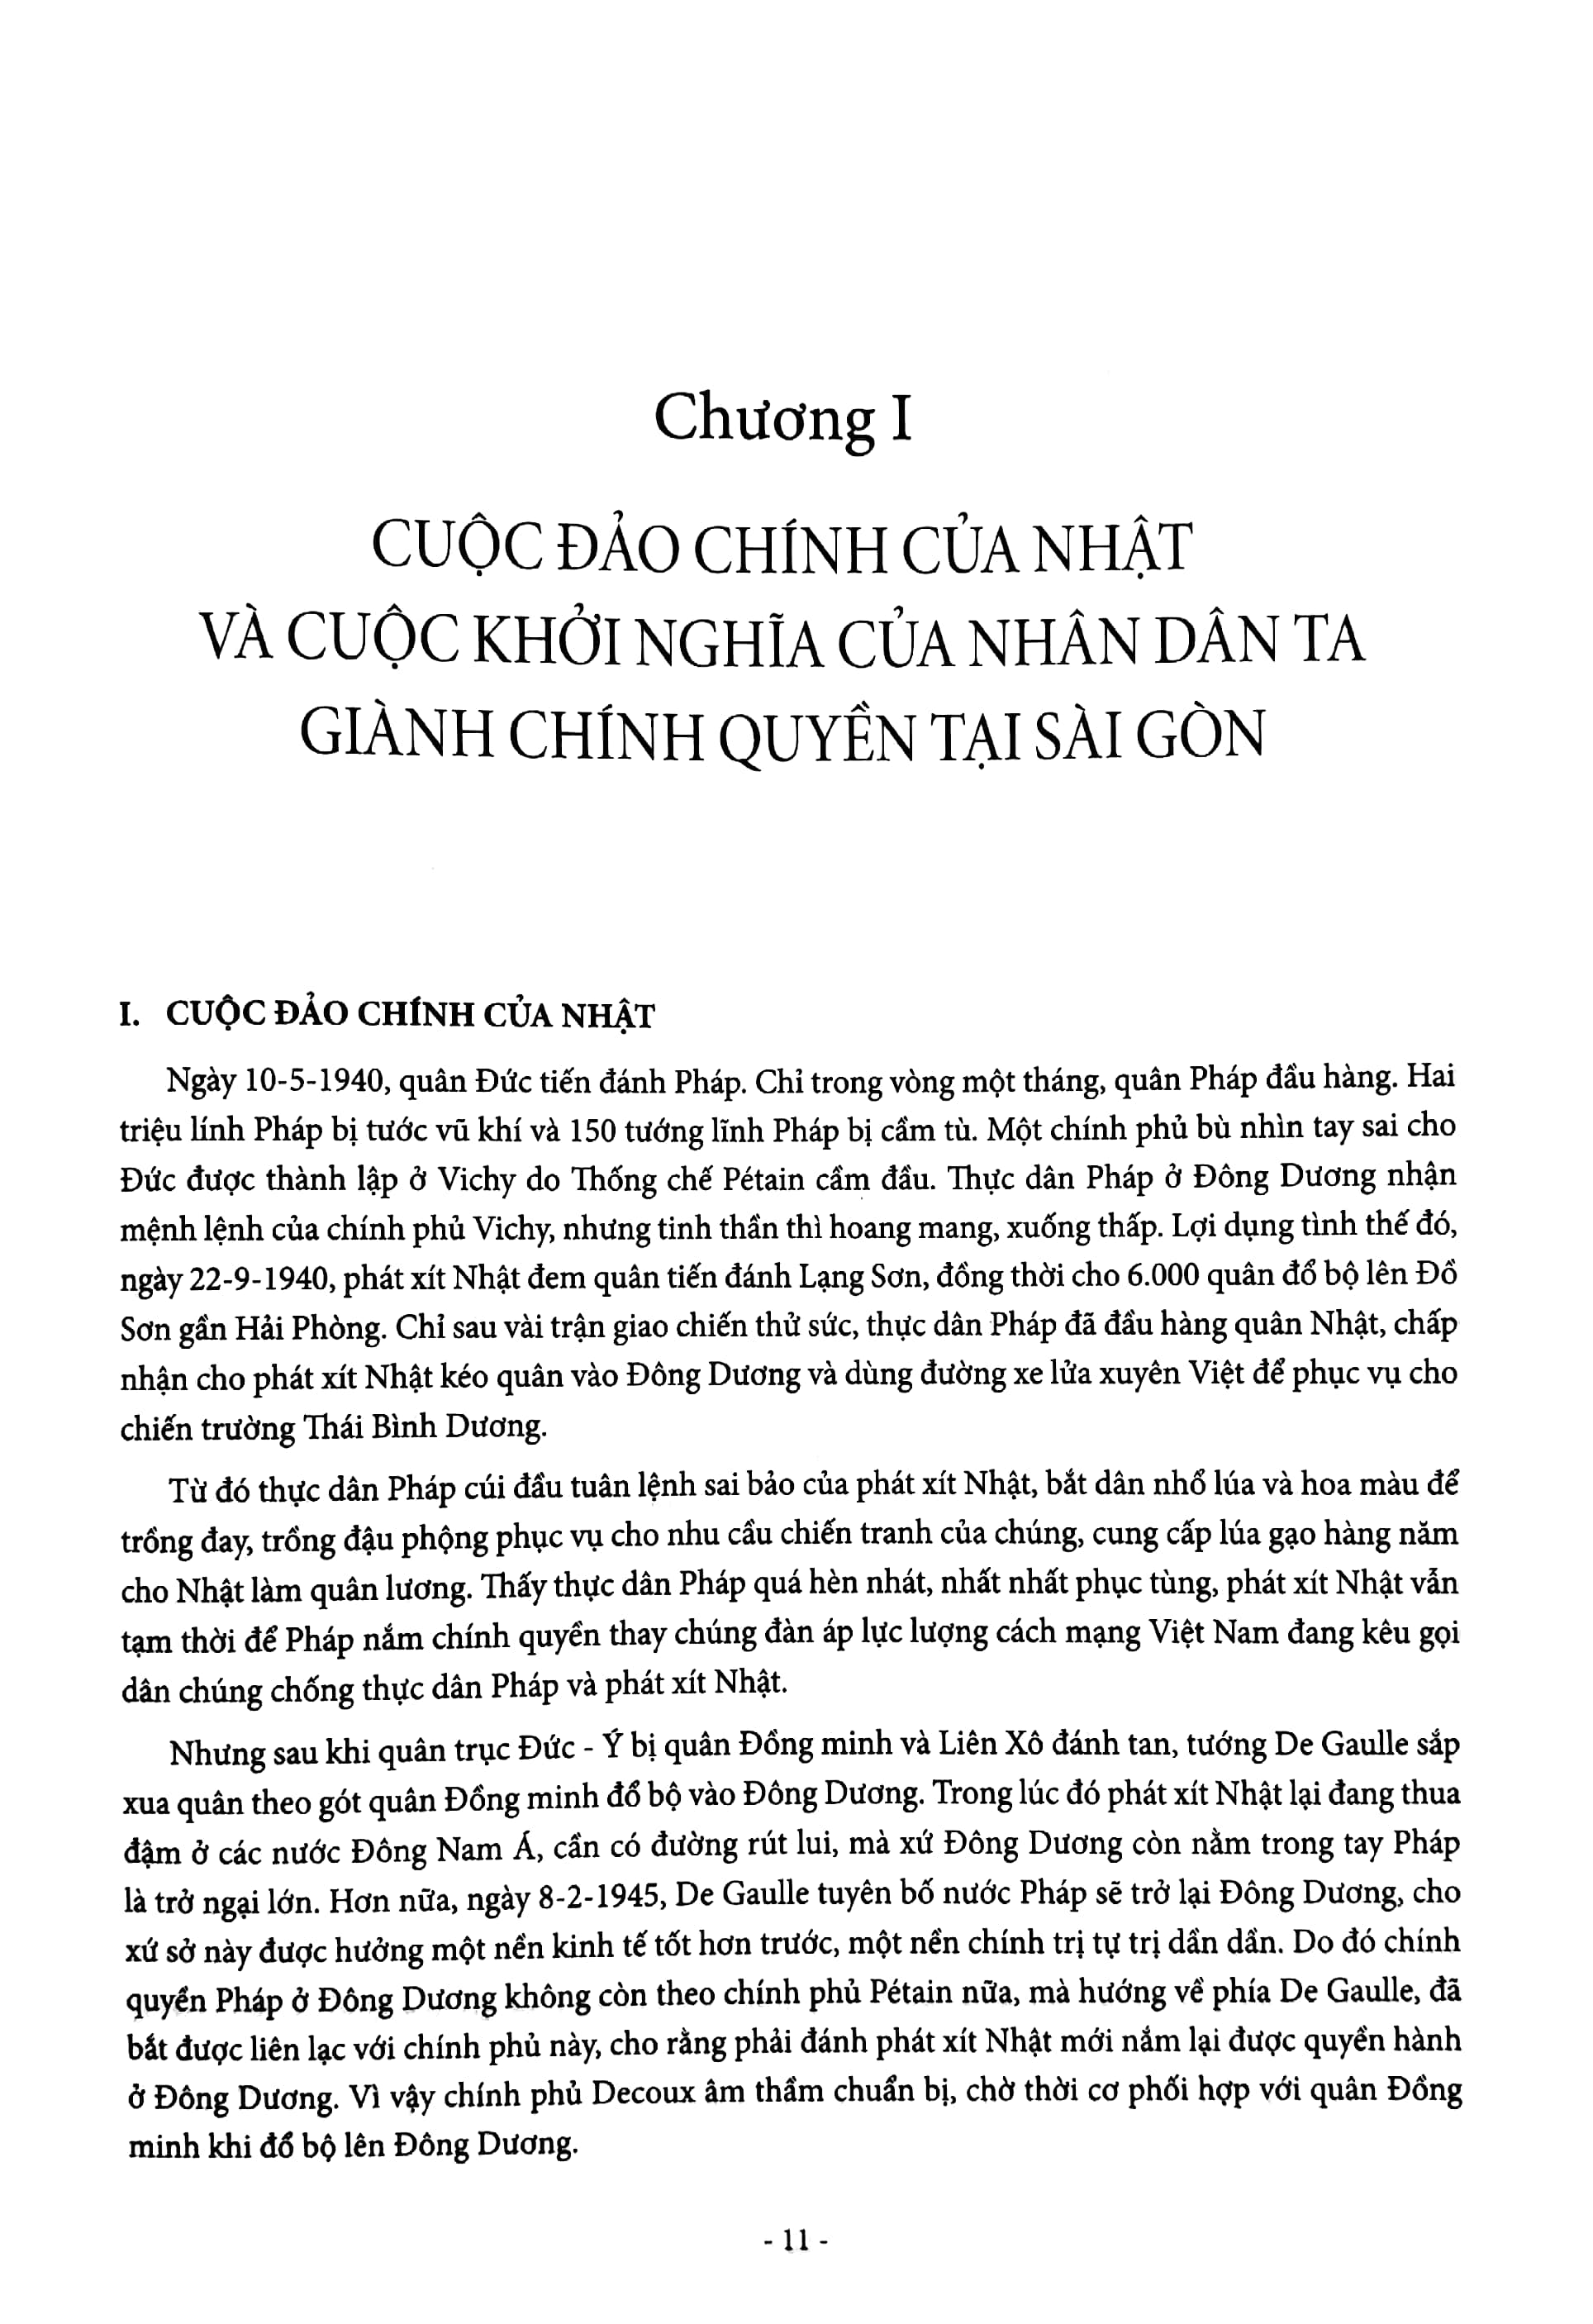 Gia Định - Sài Gòn - Thành Phố Hồ Chí Minh: Dặm Dài Lịch Sử 1698 - 2020 -Tập 2 - 1945 - 2020 PDF